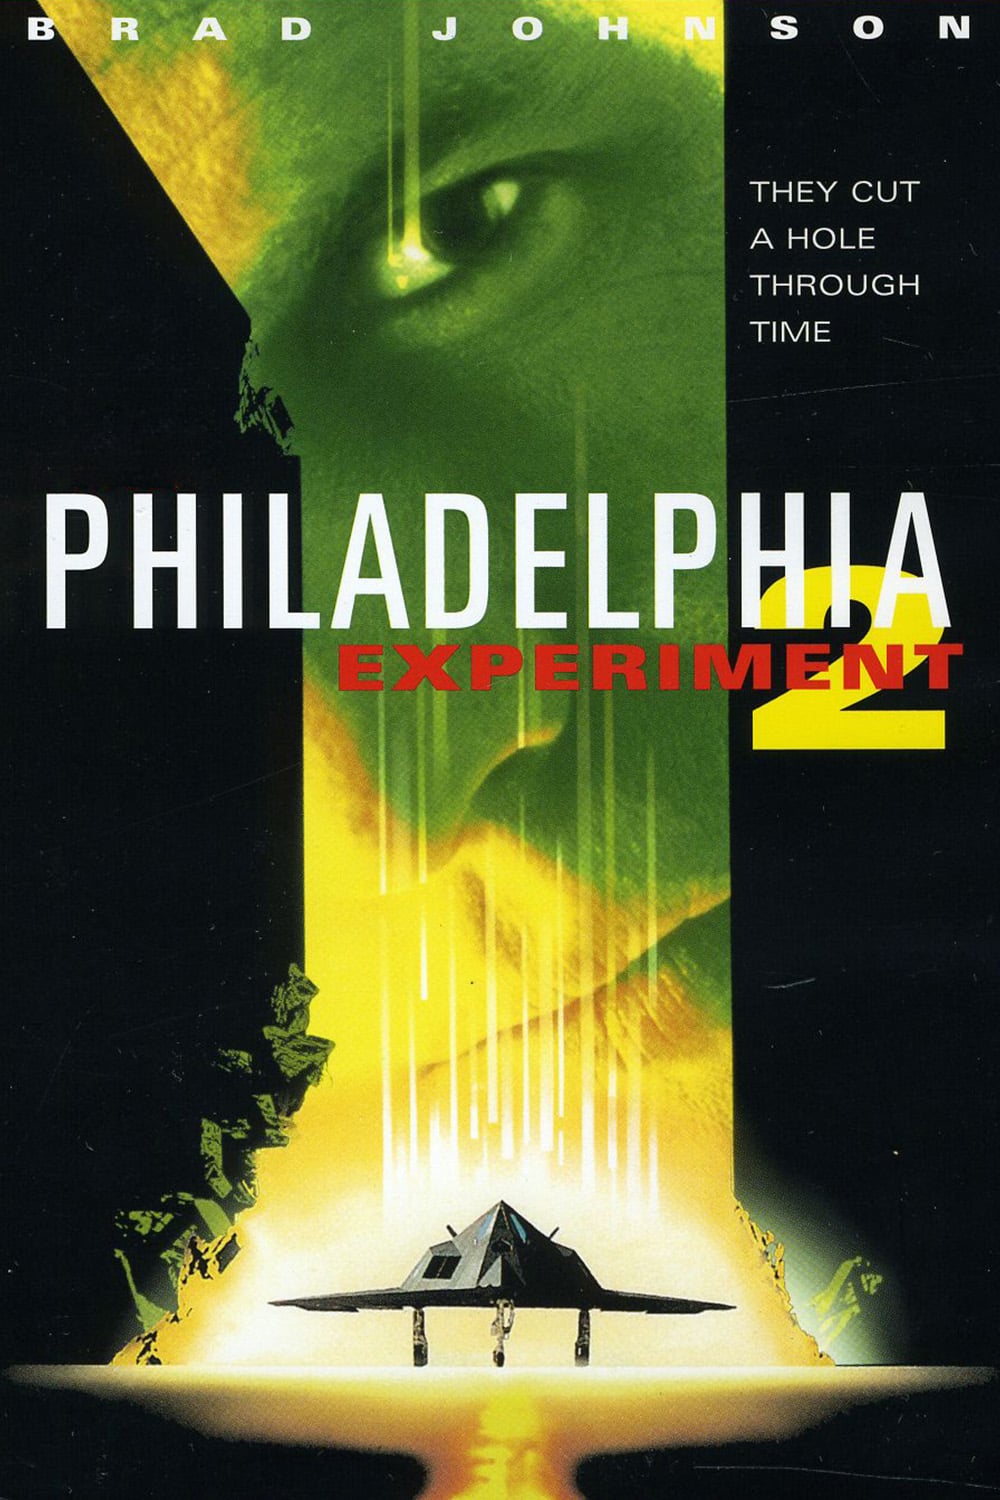 Philadelphia Experiment II Movie Poster